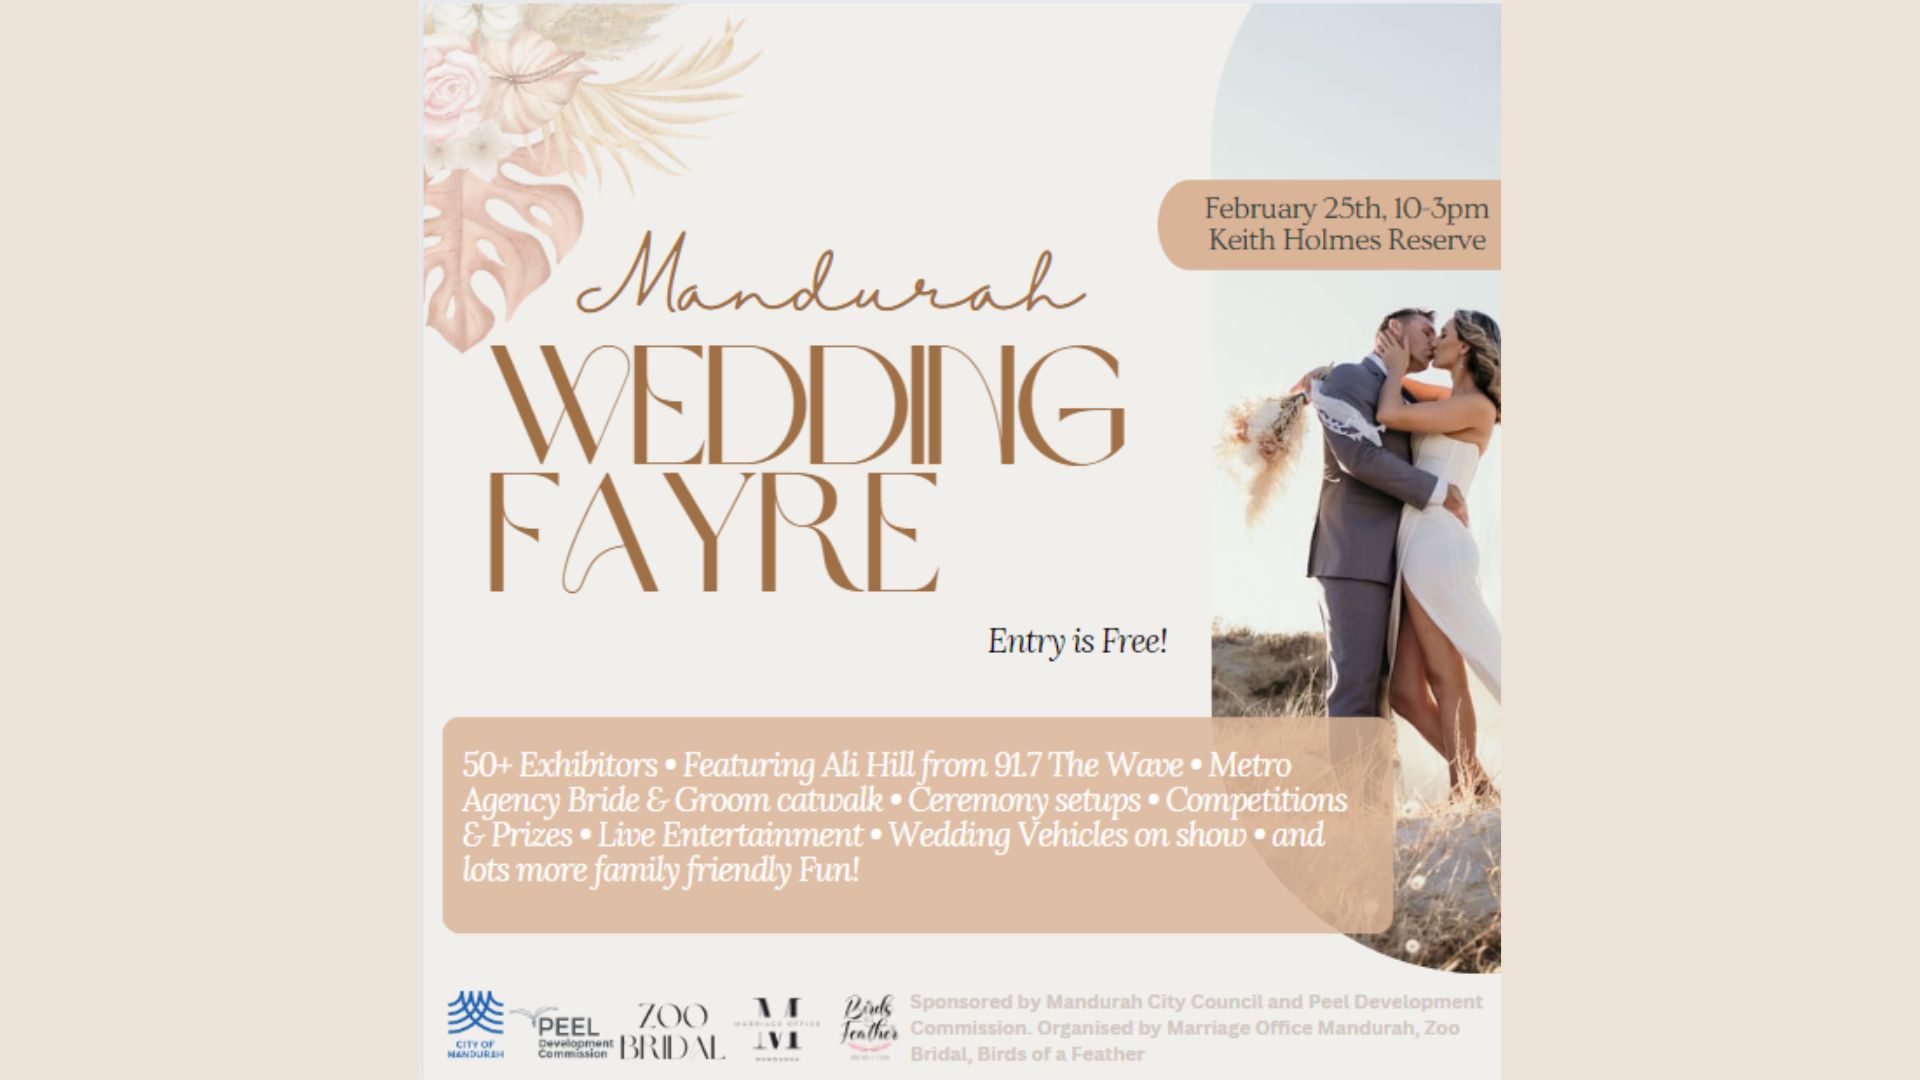 Wedding Fayre Mandurah